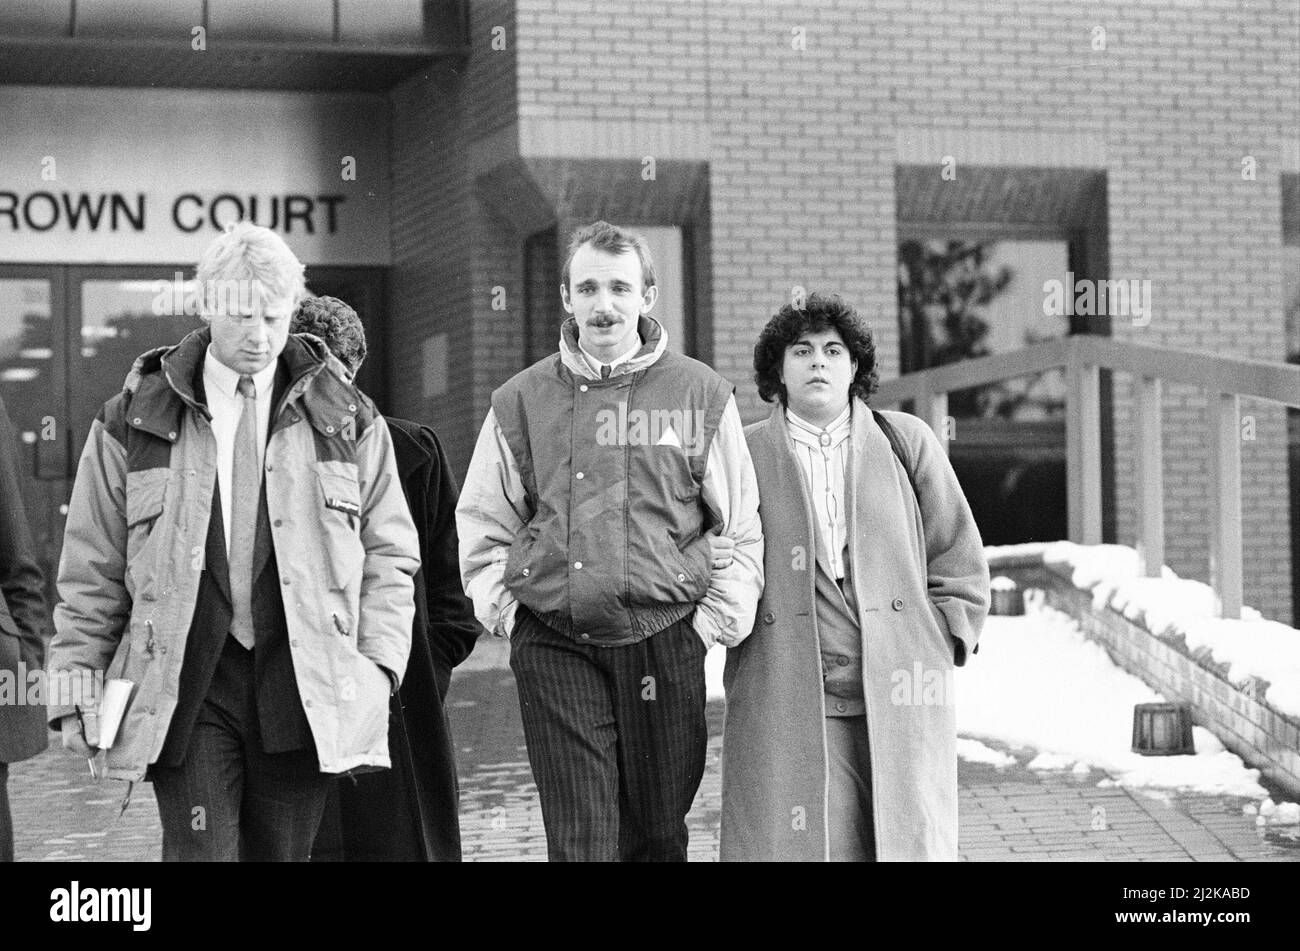 Szenen vor dem Crown Court von Leicester, nachdem Colin Pitchfork am Freitag, den 22.. Januar 1988, nach der Zulassung der separaten Morde an Lynda Mann im Alter von 15 (1983) und Dawn Ashworth im Alter von 15 (1986) zu lebenslanger Haft verurteilt worden war. Er war der erste, der aufgrund von DNA-Fingerabdrücken wegen Mordes verurteilt wurde und der erste, der infolge eines DNA-Massenscreenings gefangen wurde. Unser Bild zeigt ... Szenen vor Gericht. Stockfoto